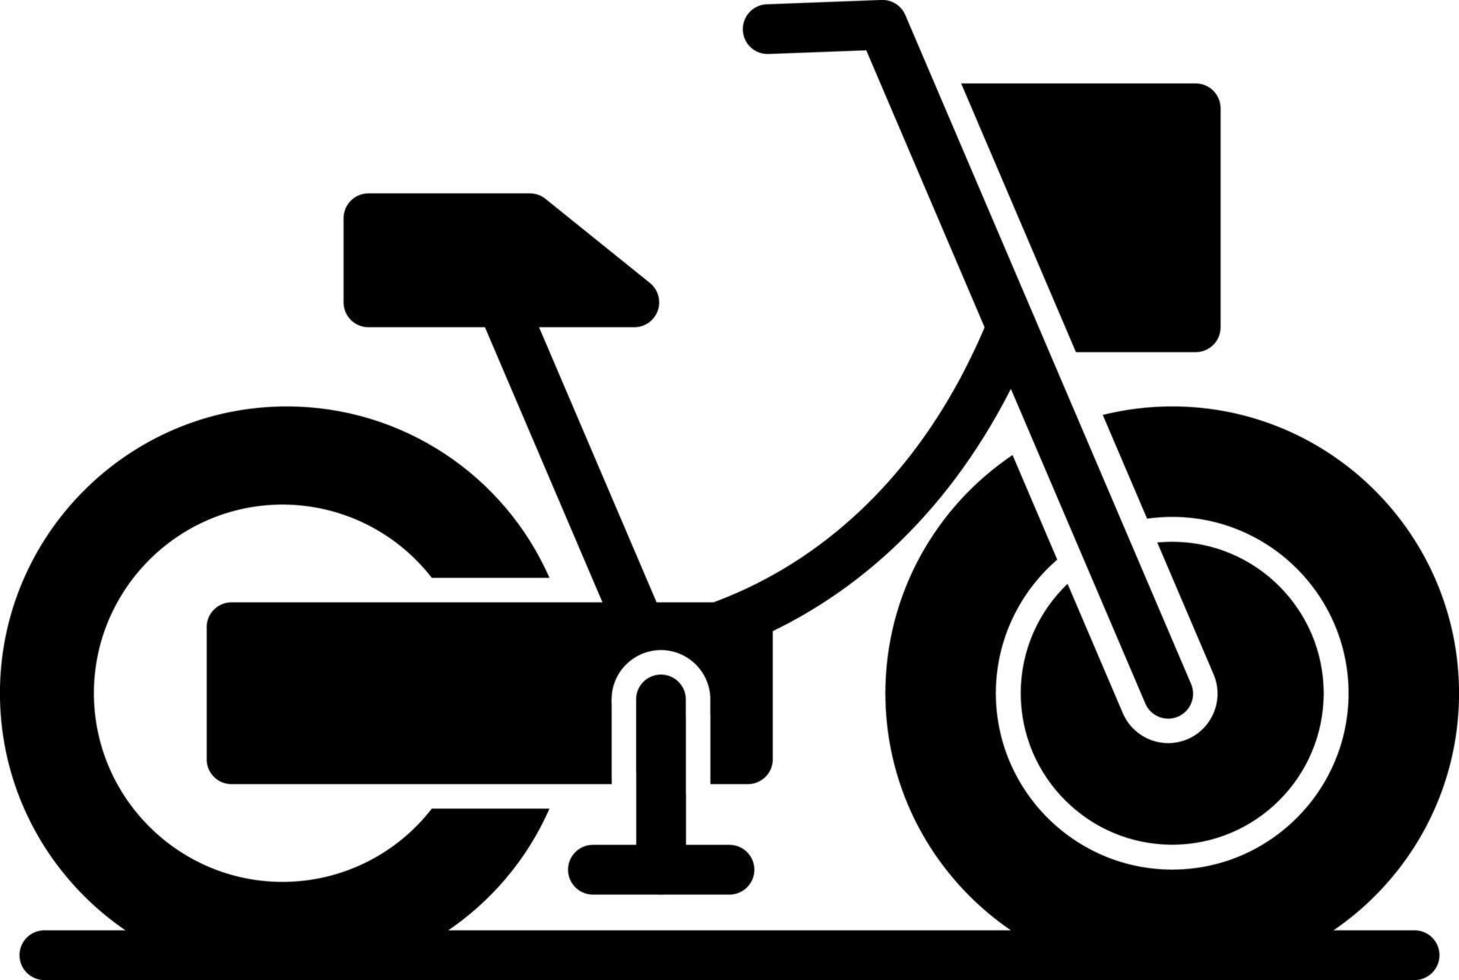 Bike Vector Icon Design